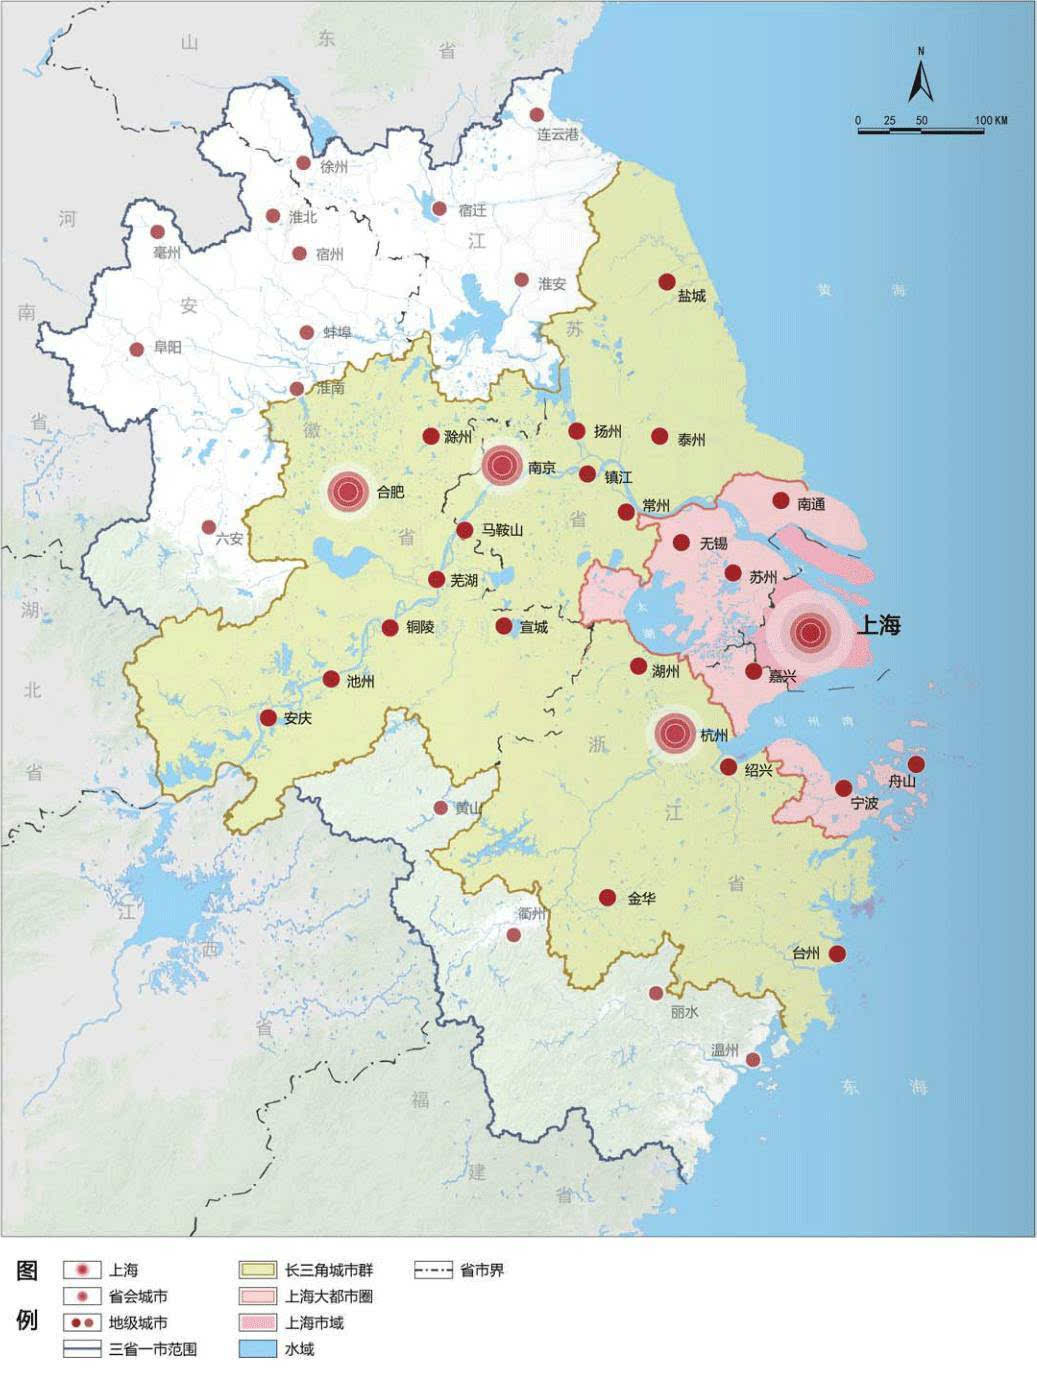 上海市地理信息公共服务平台（天地图·上海）